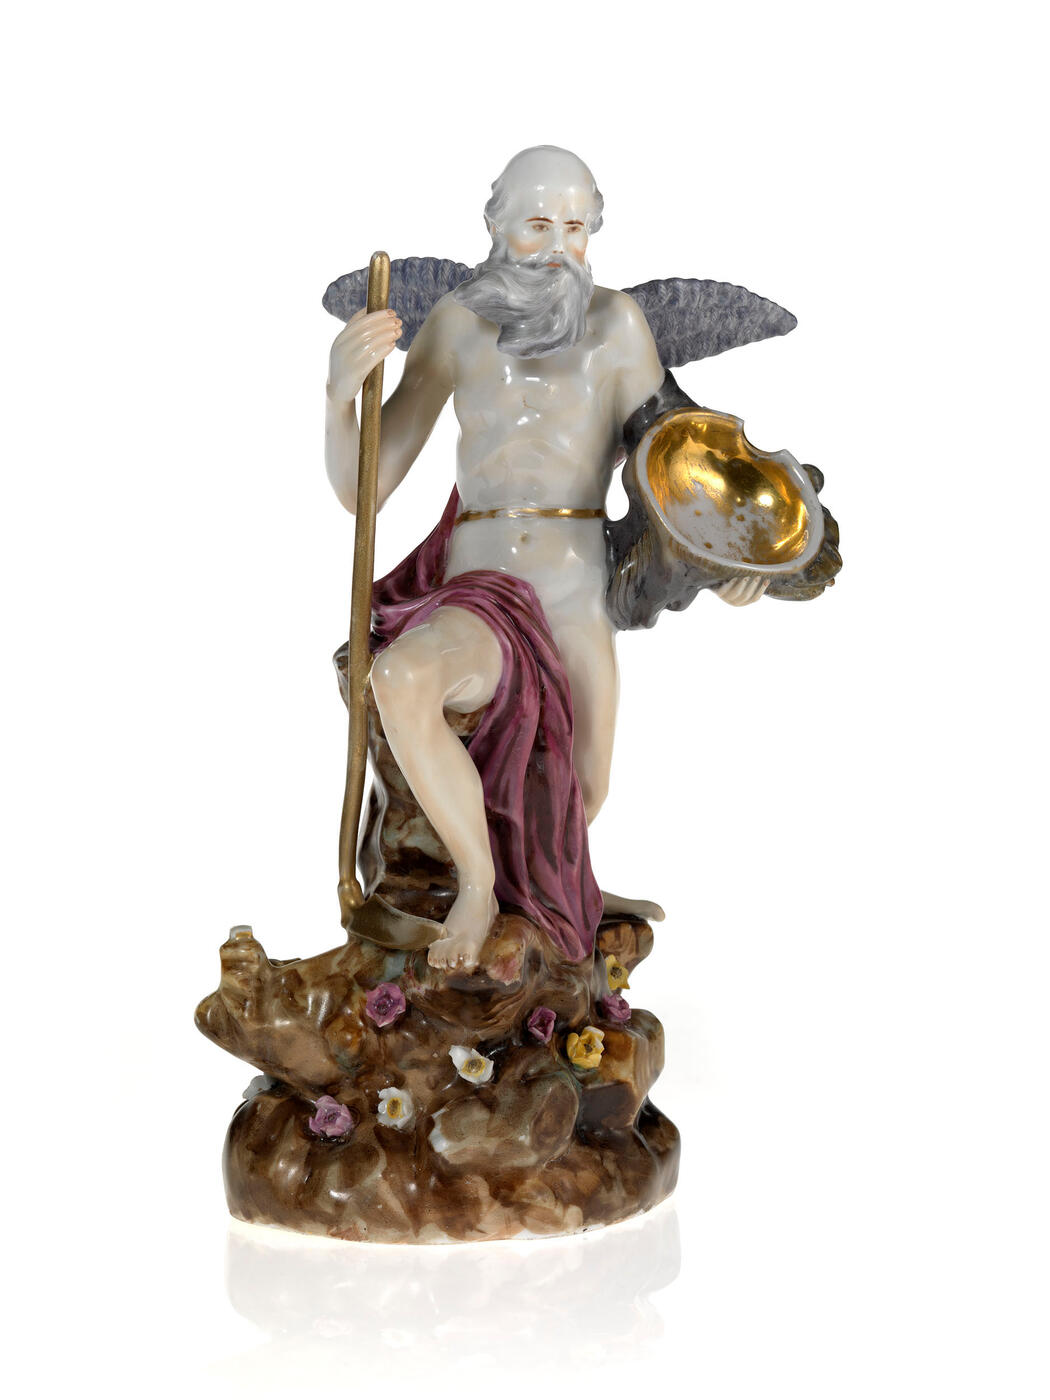 A Porcelain Figurine of Chronos